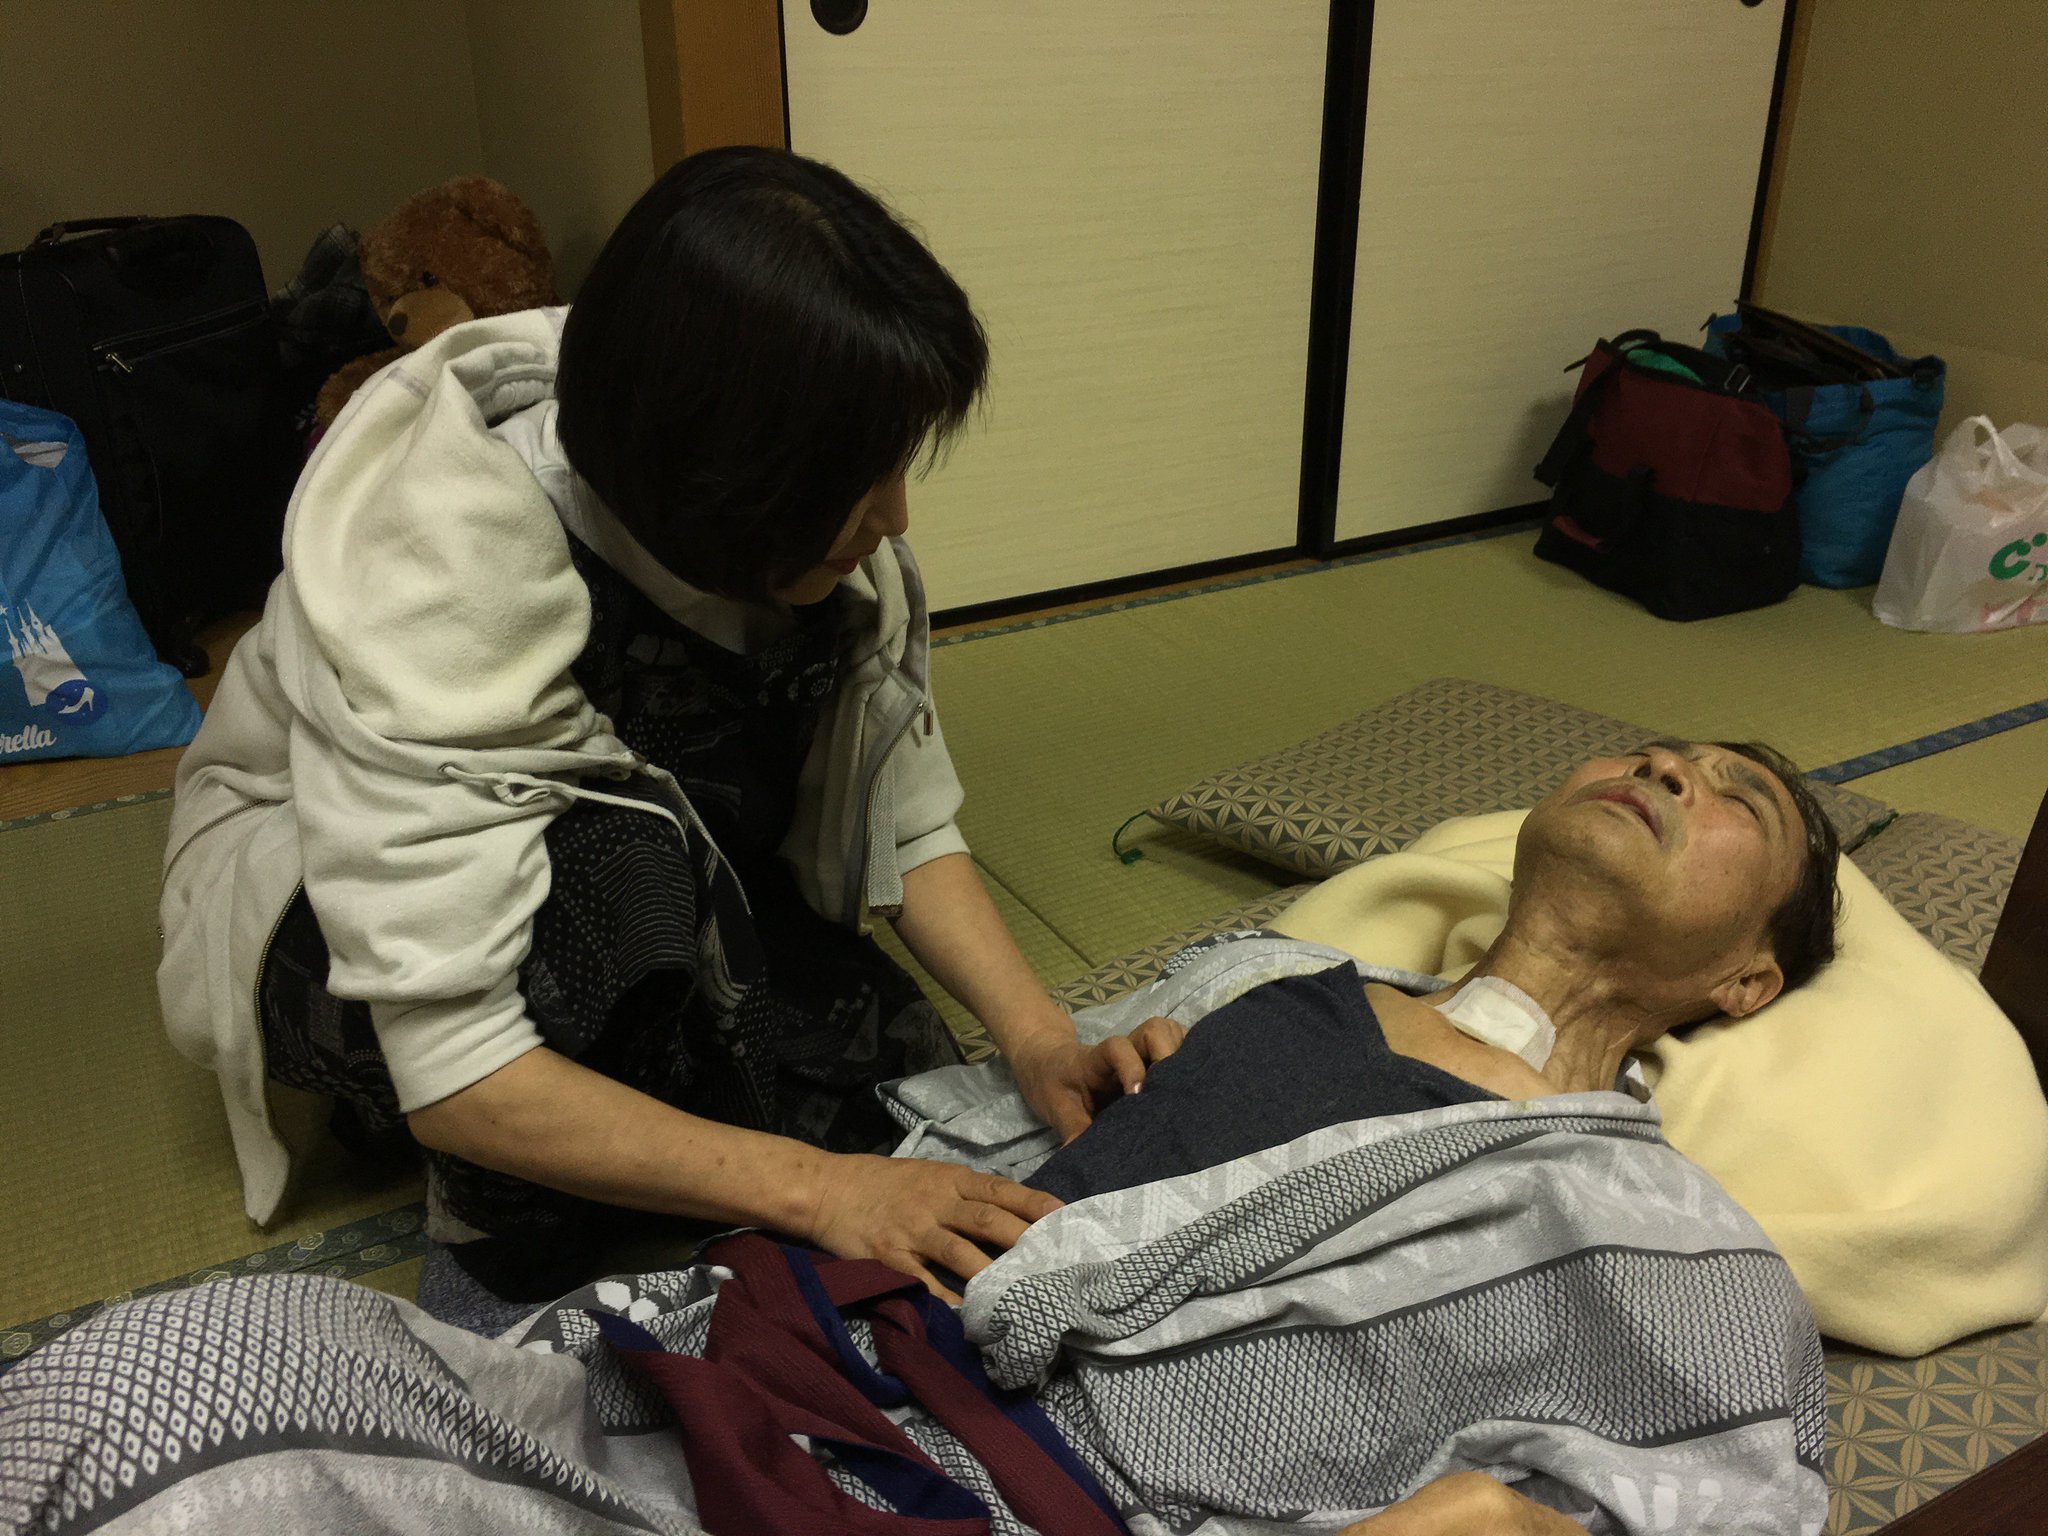 温泉に戻ると、Mr.ハタの主治医の今田先生が呼ばれていた。彼女は旅館で「訪問診療」中。(1年前の英語版ツイートを元に再現しています) https://t.co/wvOiVvjjaT